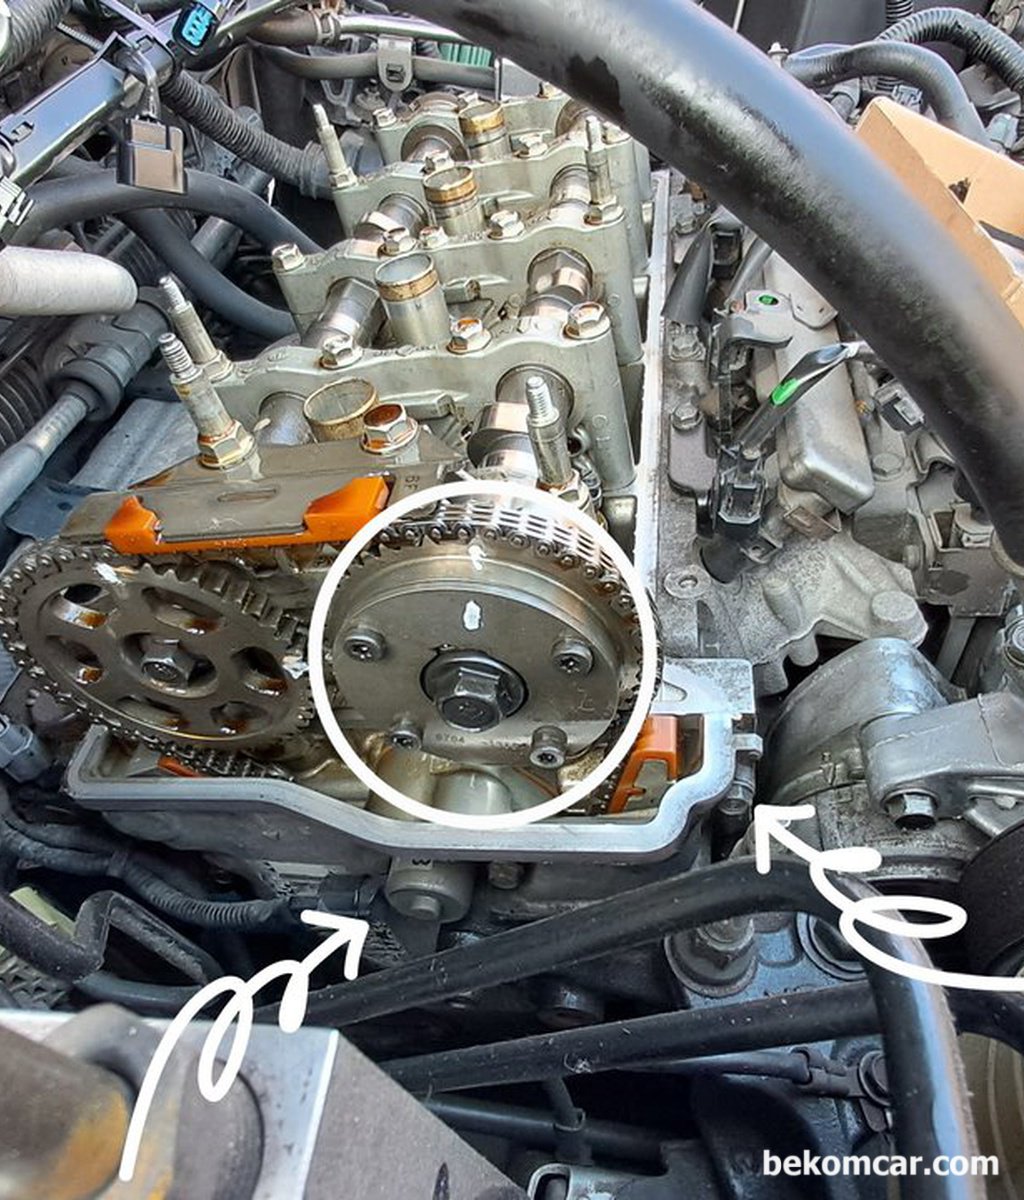 혼다 어코드 8세대 2.4L 차량의 VTEC 스풀밸브 오일누유가 있다고 하는데 어디를 점검해야 하나요?|贝科姆汽车 (bekomcar)